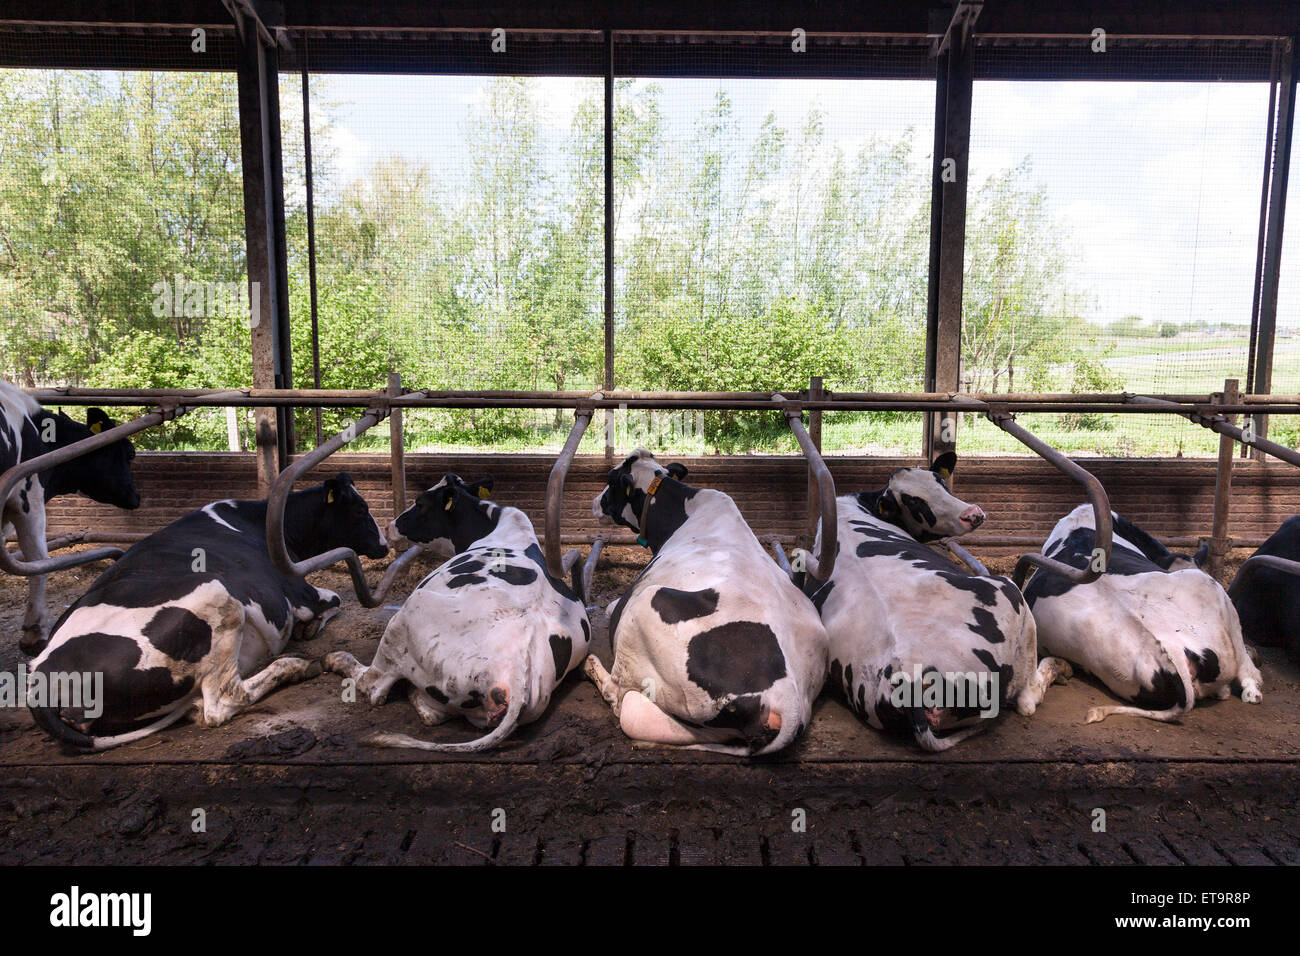 Les vaches noires et blanches se trouvent dans ouvrir avec un fond vert stable Banque D'Images